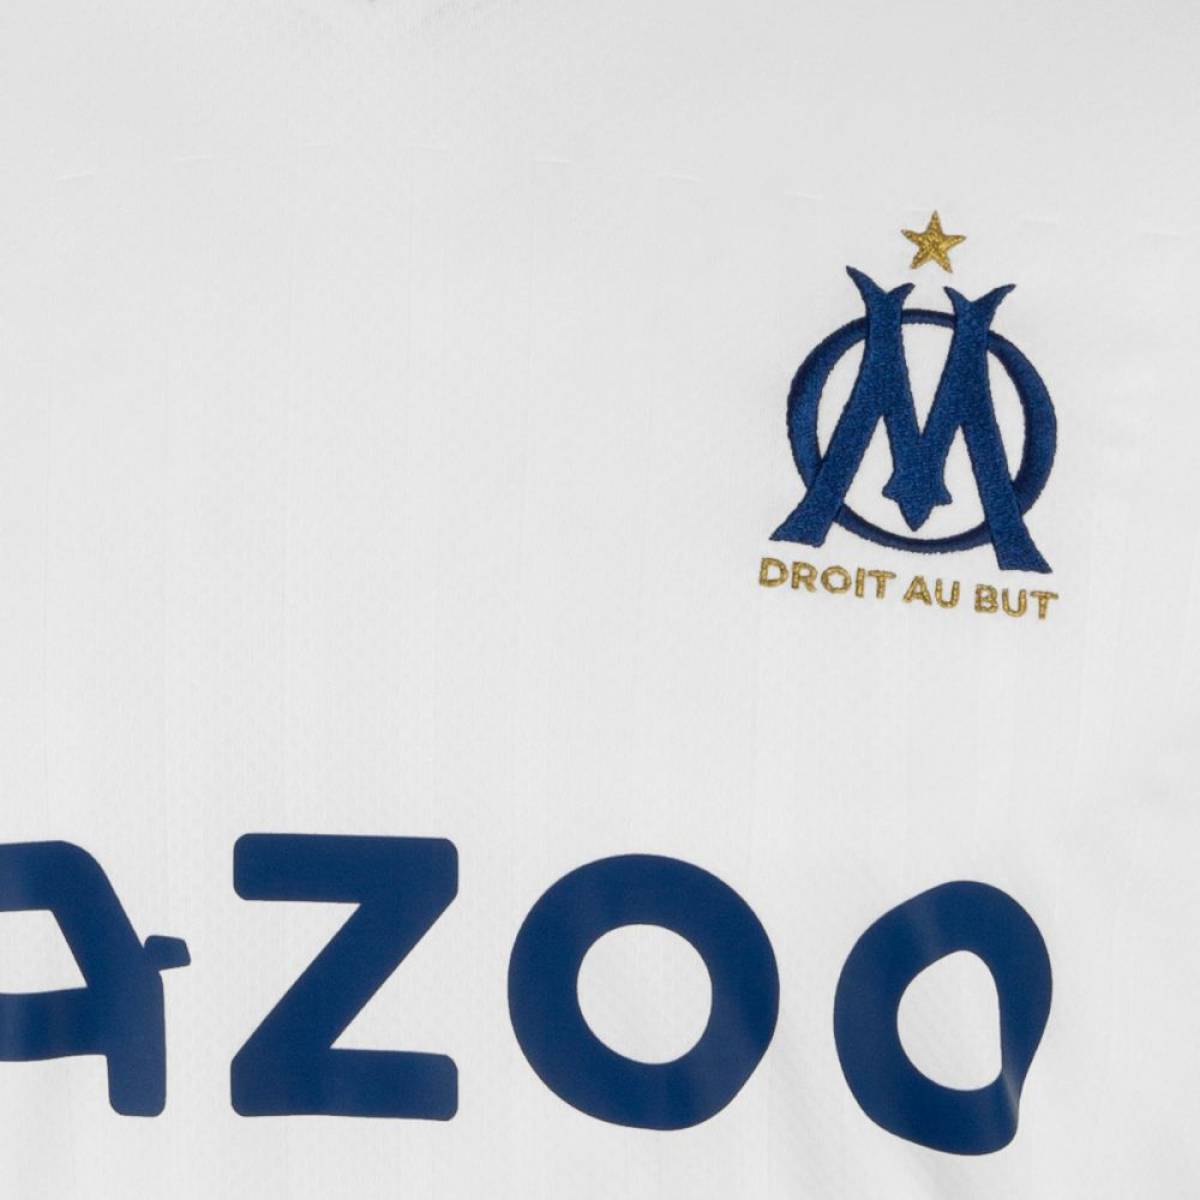 Maillot OM : tout savoir sur le maillot utilisé contre Brest en Ligue 1